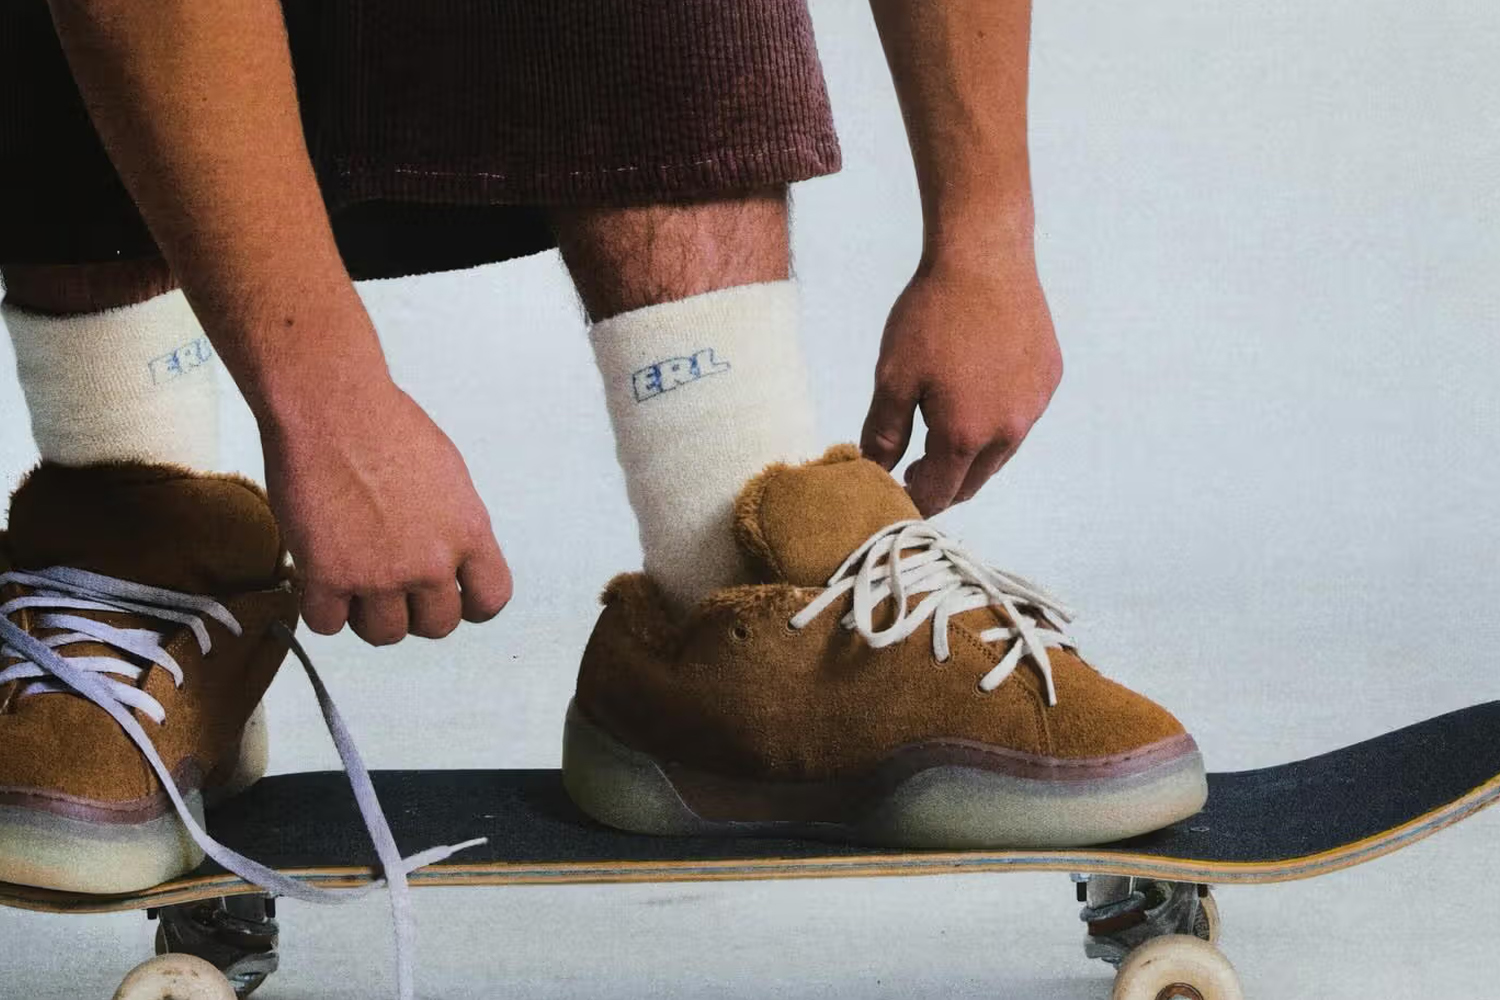 ERL prima sneaker skate shoe